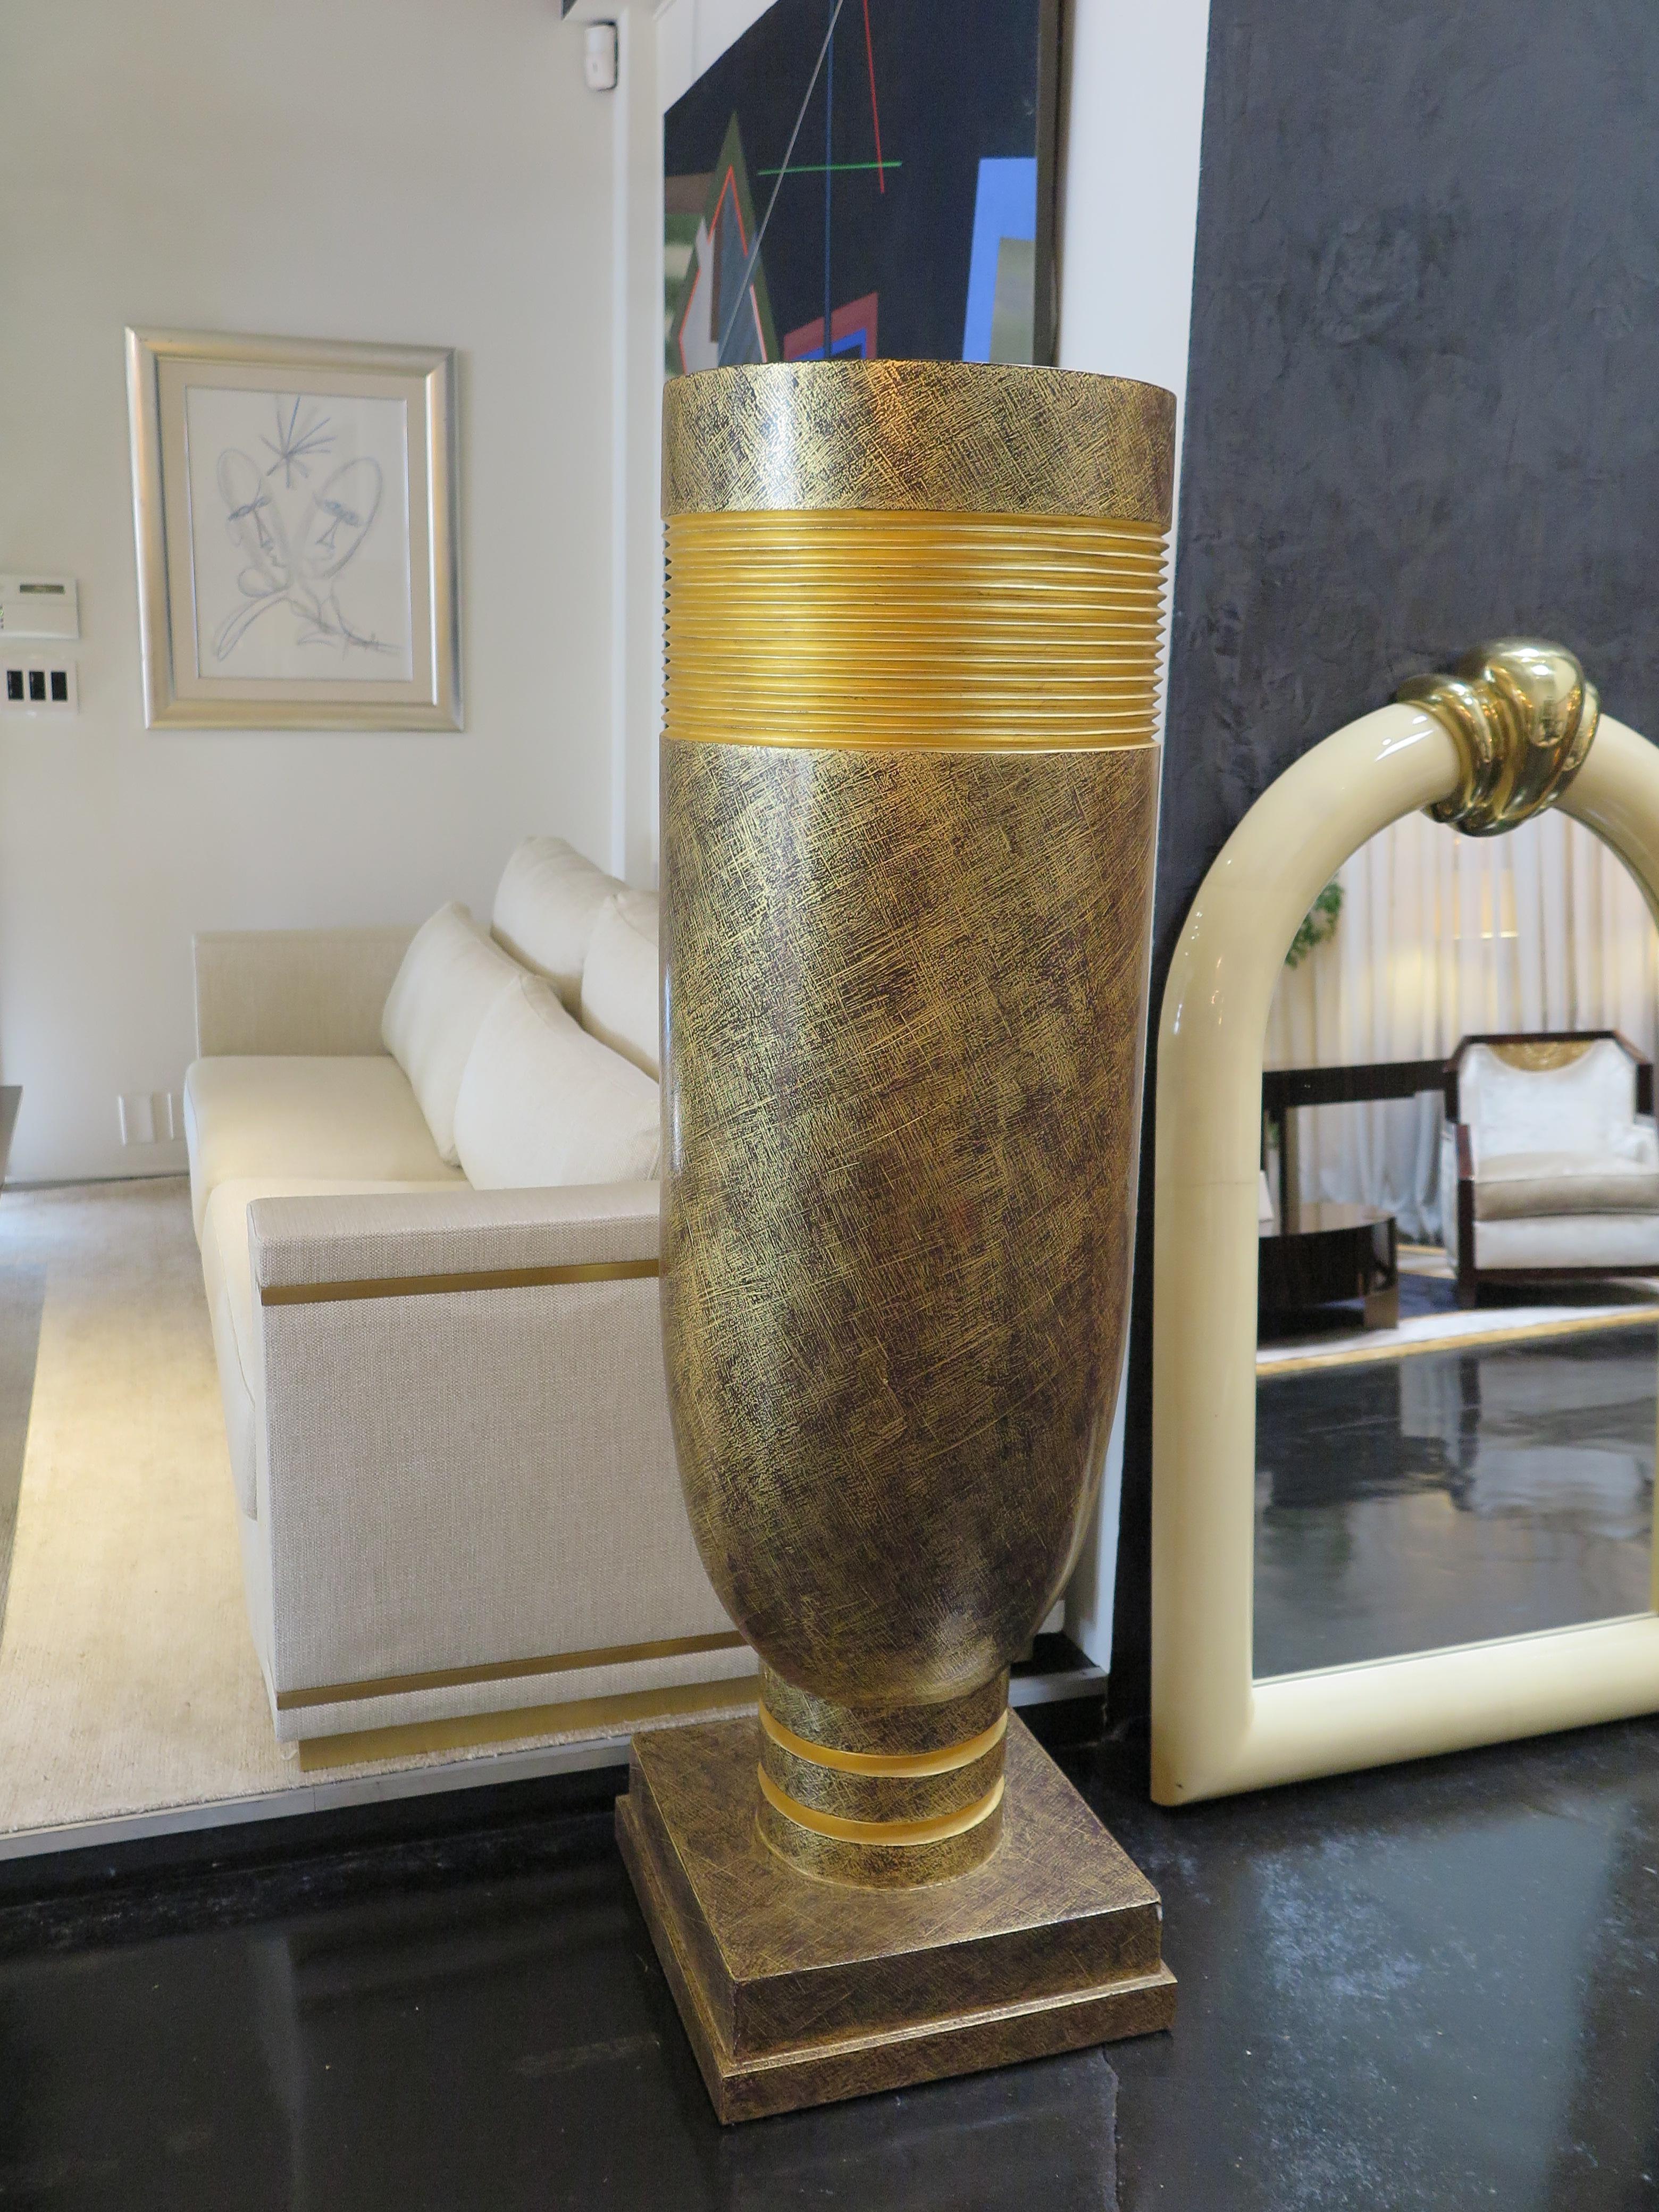 Diese extra großen Vasen/Deko-Urnen haben Gipsbecken mit goldener Patina und schwarzen Akzenten. Ursprünglich als überdimensionale Fackeln entworfen, können sie als wunderschöne Vasen für Pflanzen- oder Blumenarrangements umfunktioniert werden.